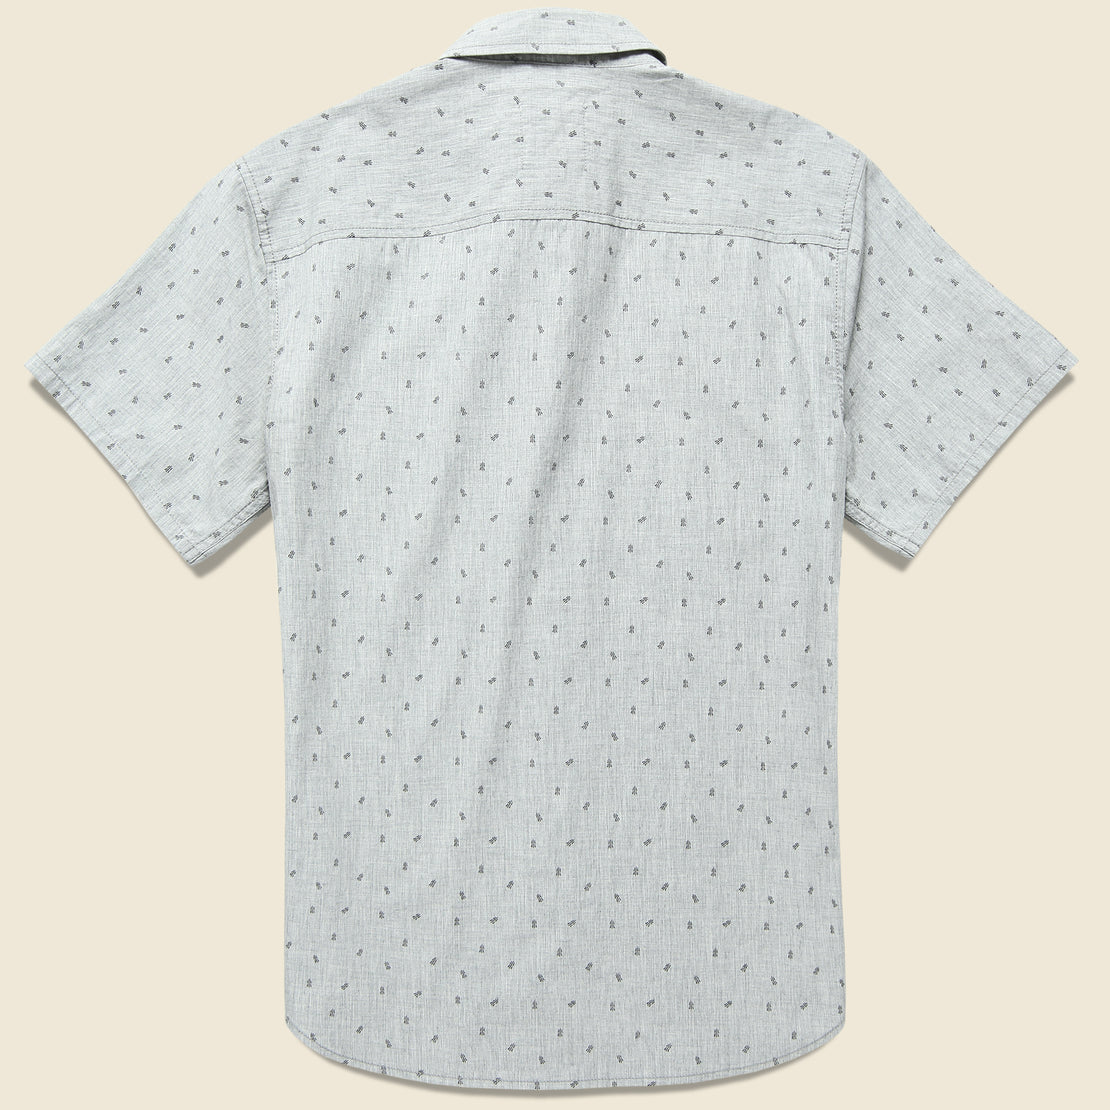 Taronga Shirt - Grey